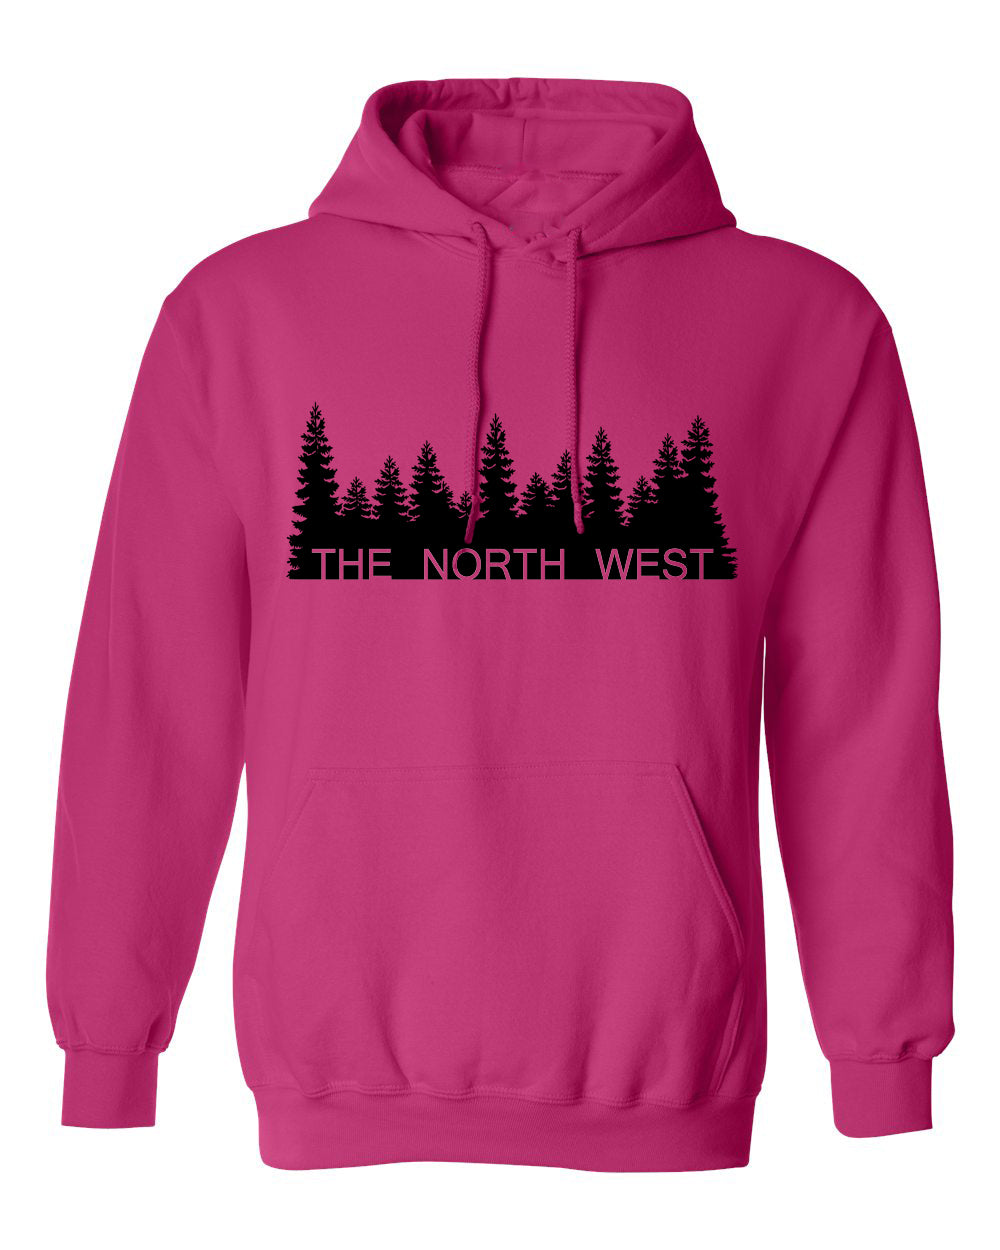 The North West Treeline Hoodie in Pink